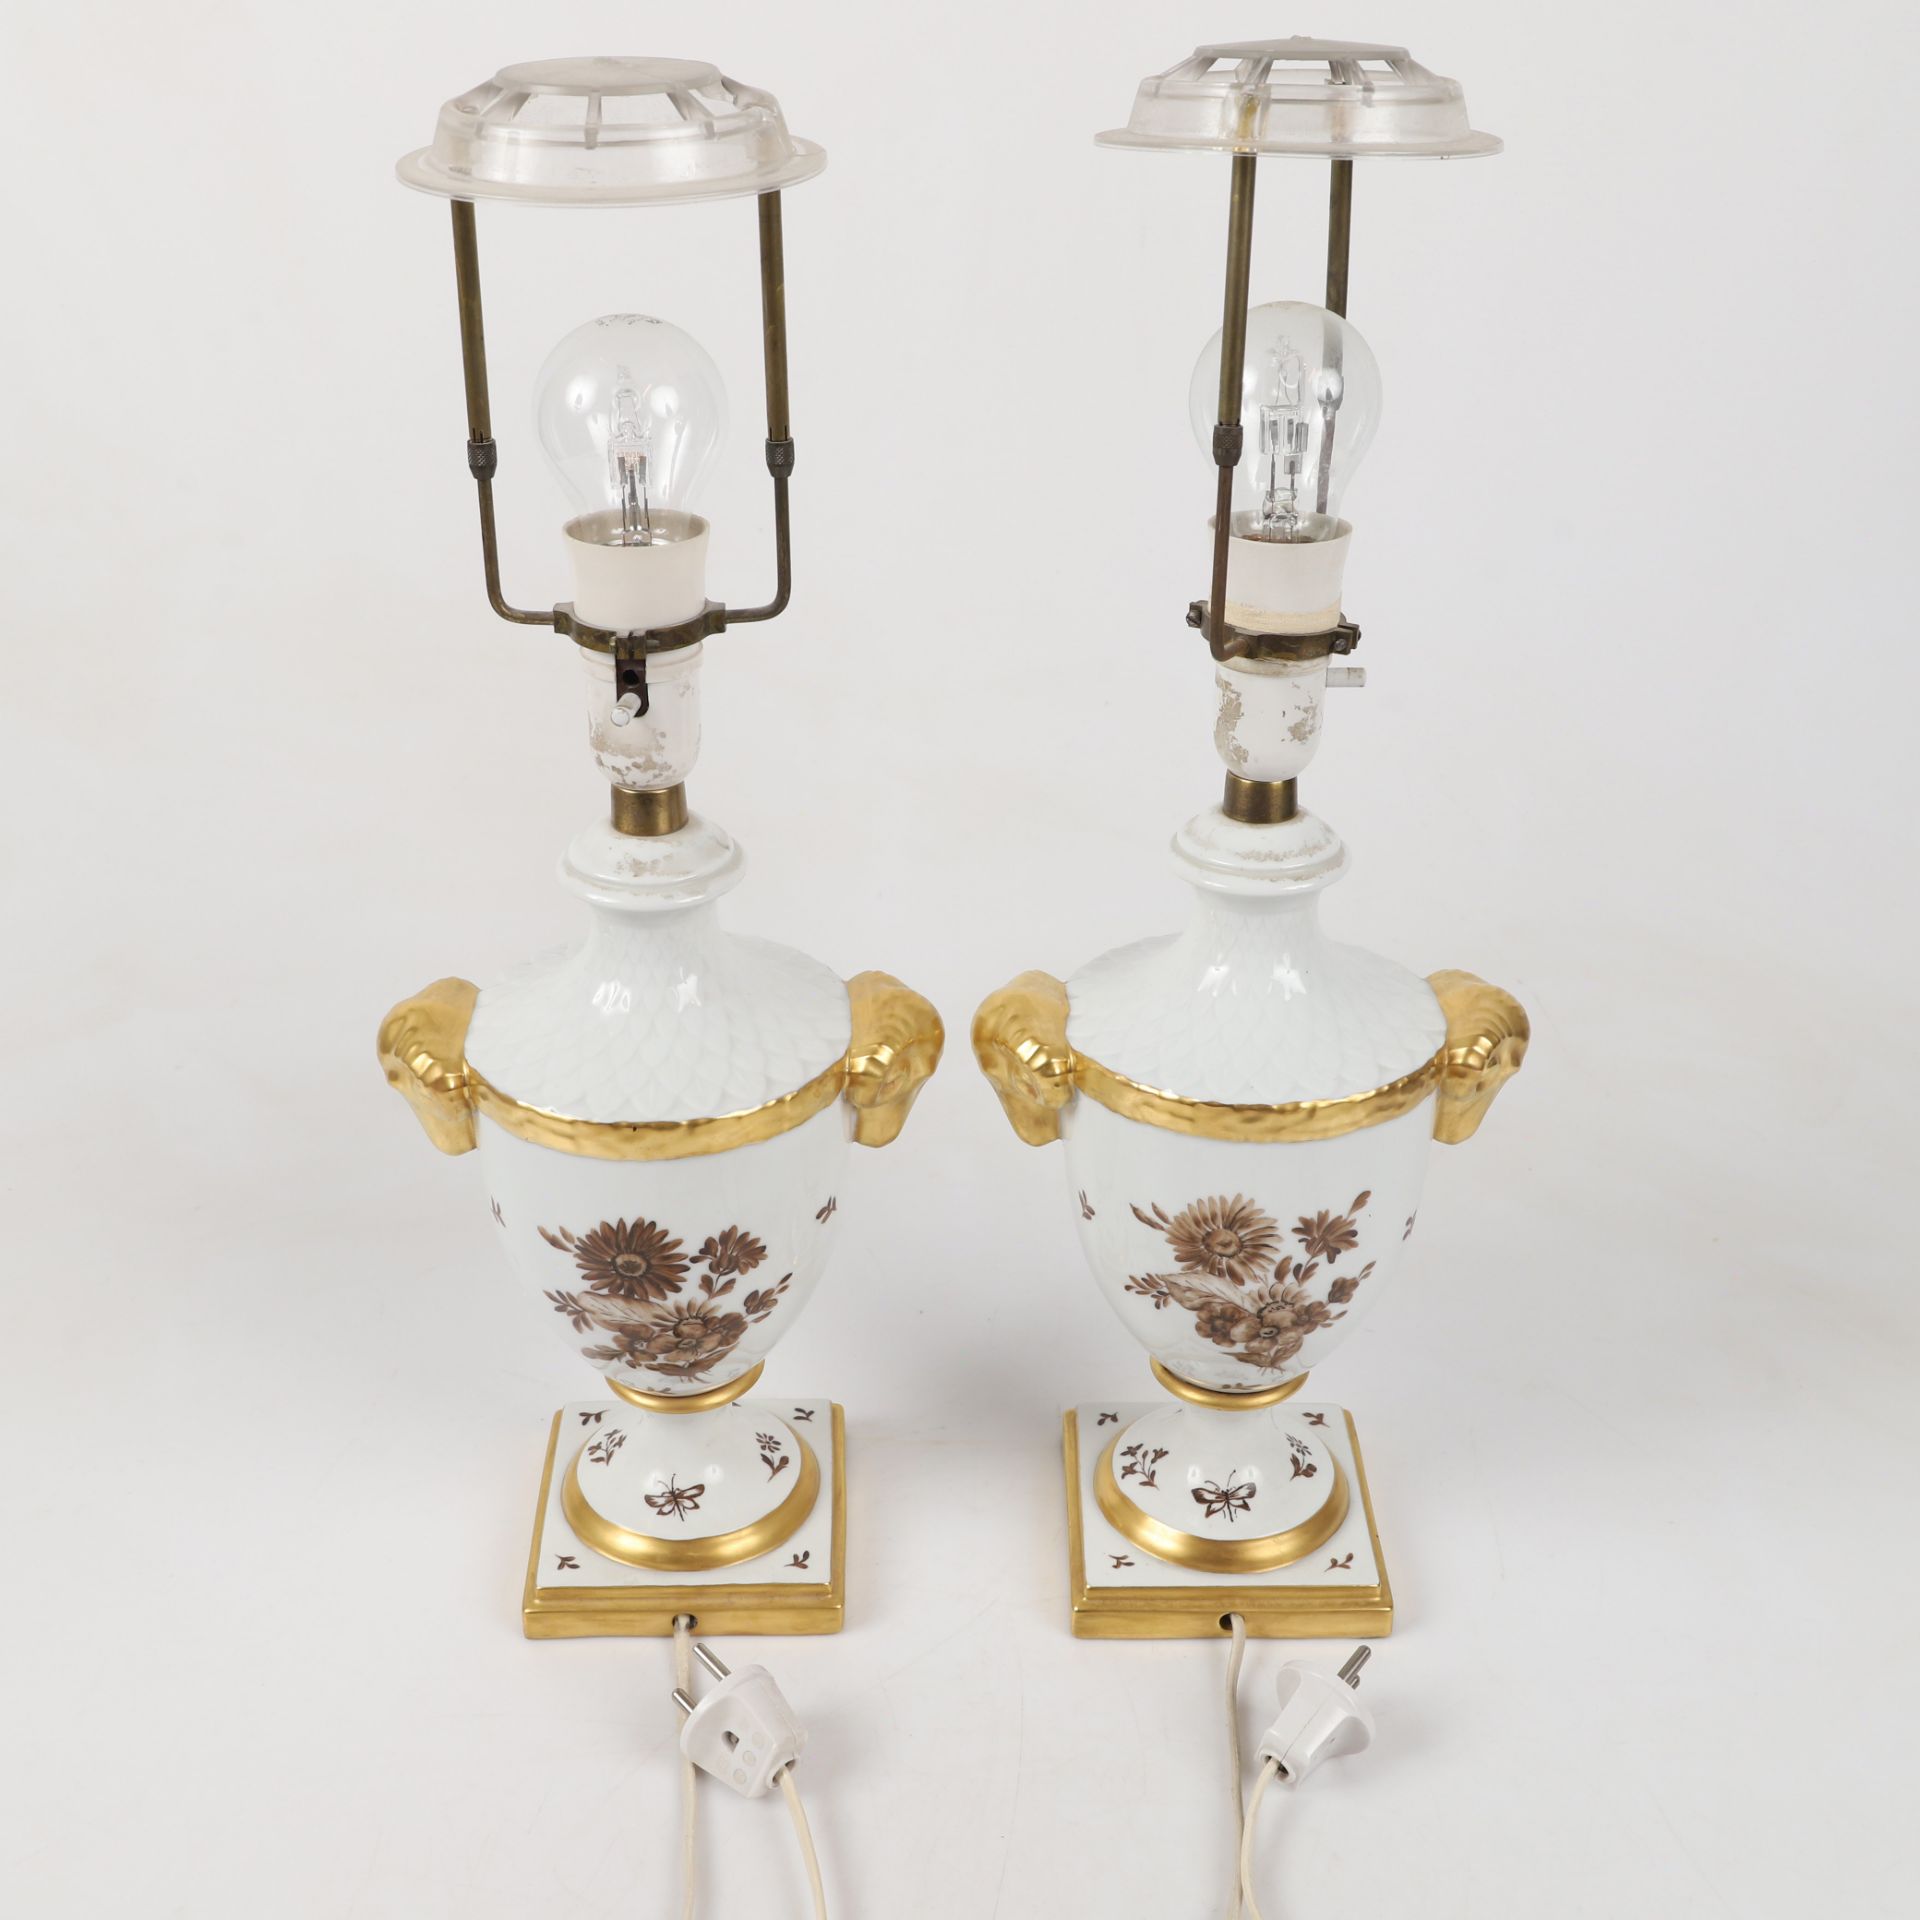 Paar Porzellanlampen feinster Facon. Alboth&Kaiser. Ca. 18 x 12, Höhe 37 cm ohne Schirm. - Image 2 of 3